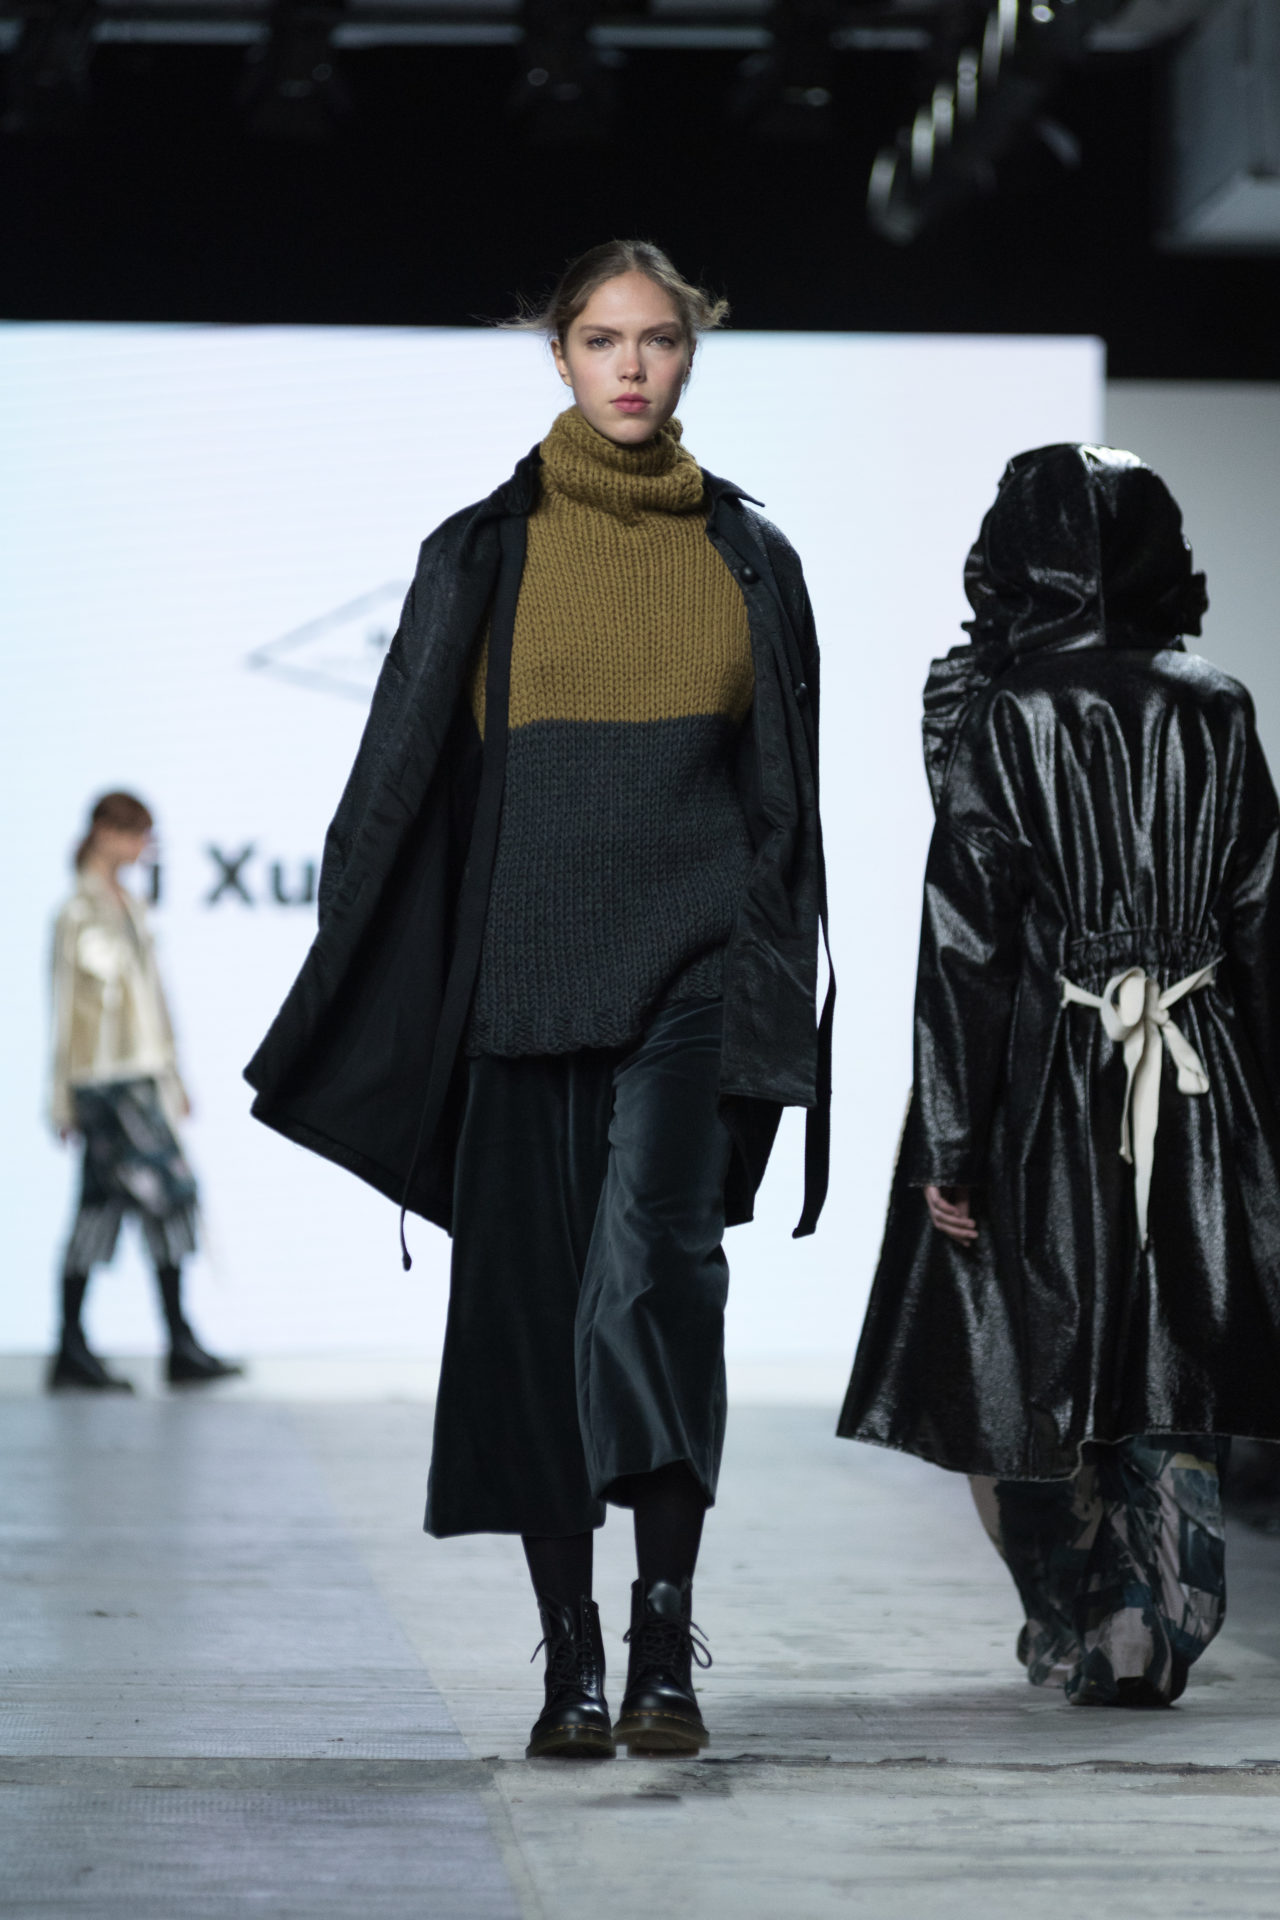 Fashion Designer: Yi Xuan Wang - Fashion Graduate Italia Fashion Show - NABA